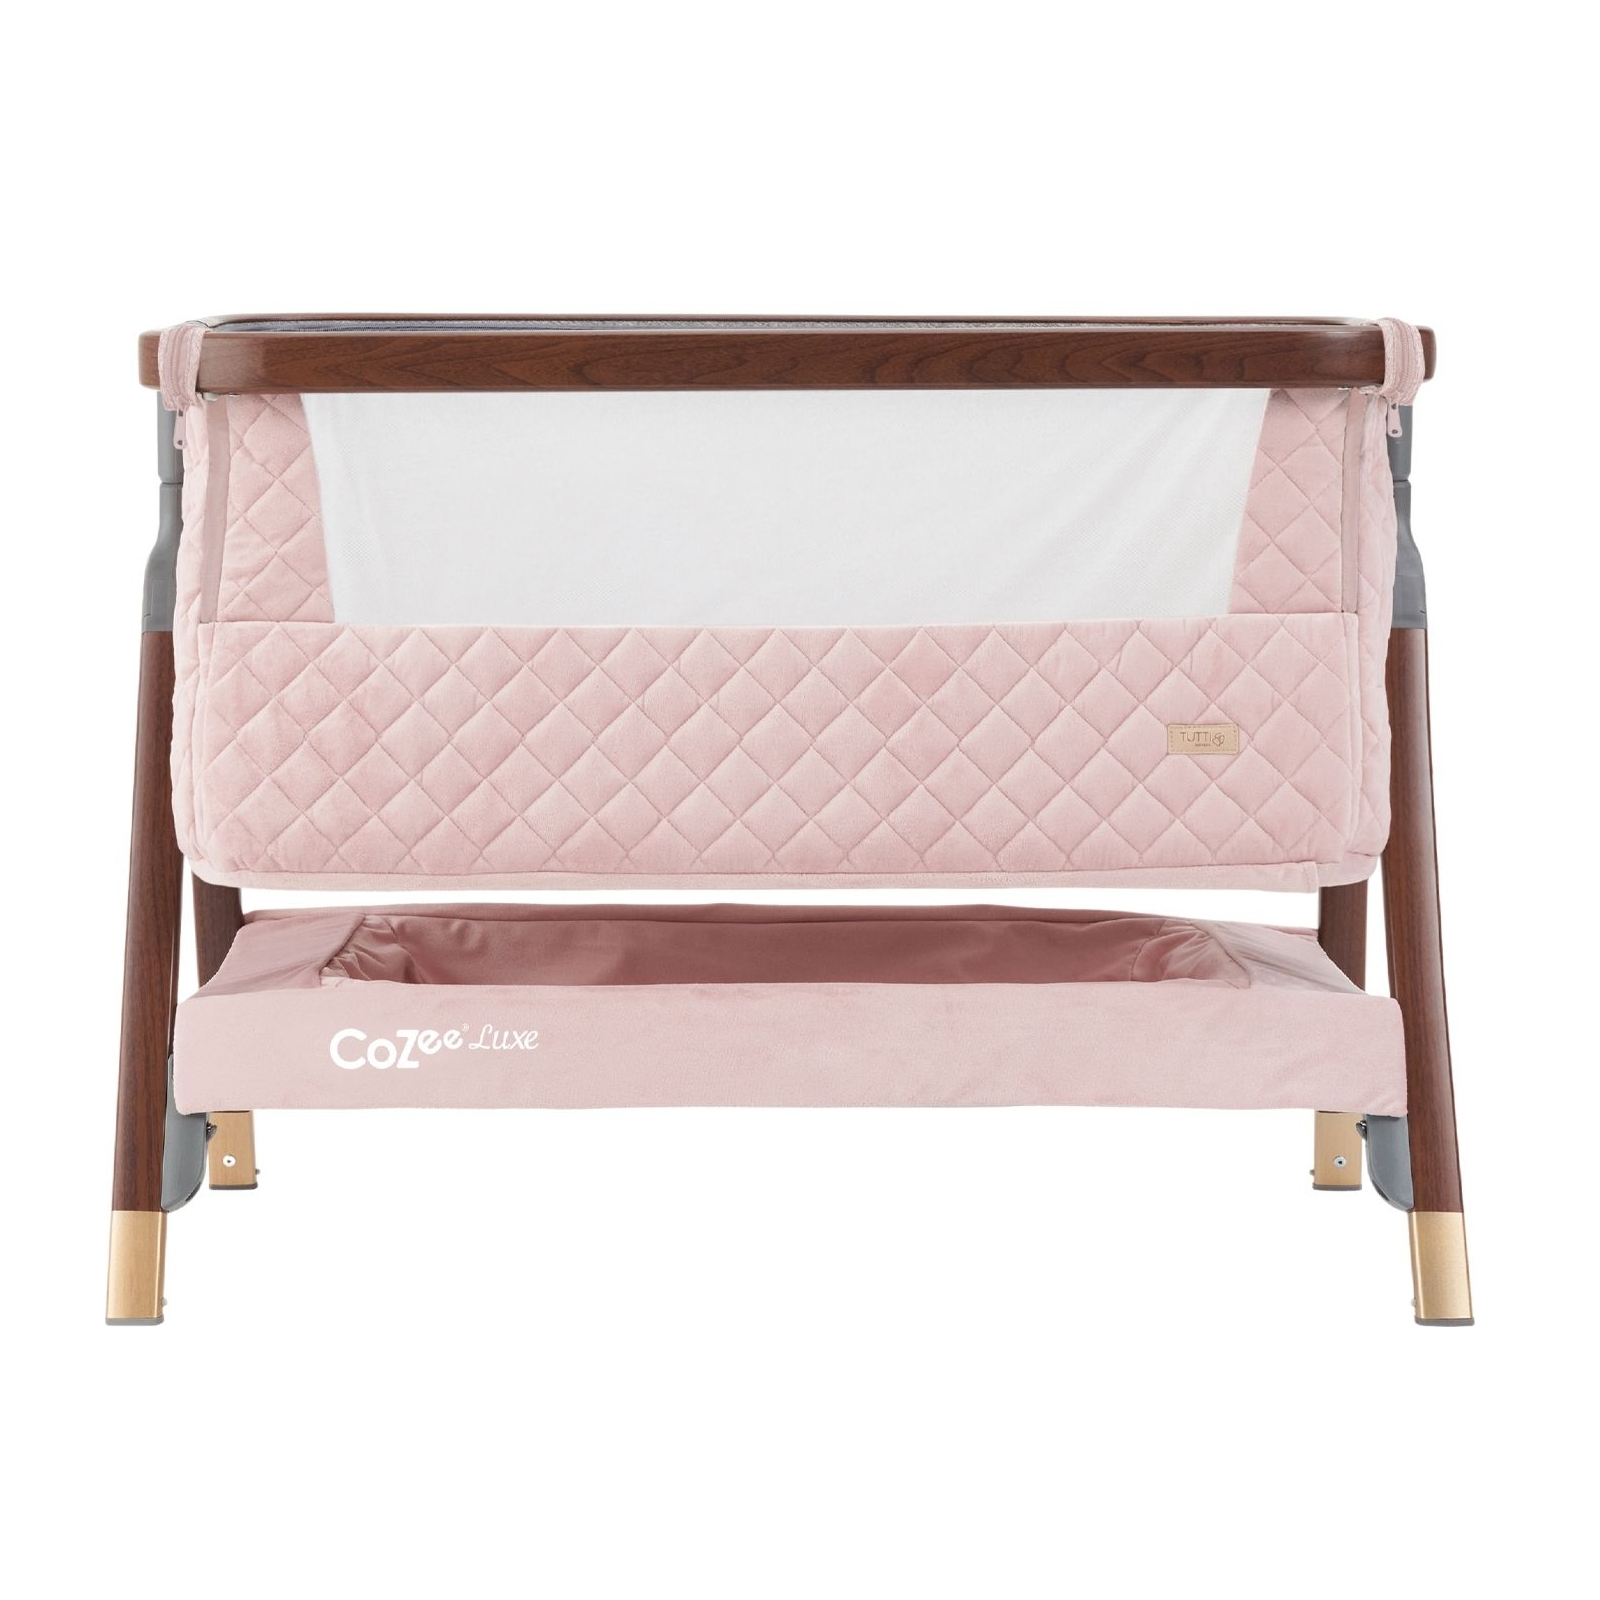 Кроватка Tutti Bambini CoZee Luxe pink (211208/6591) изображение 5